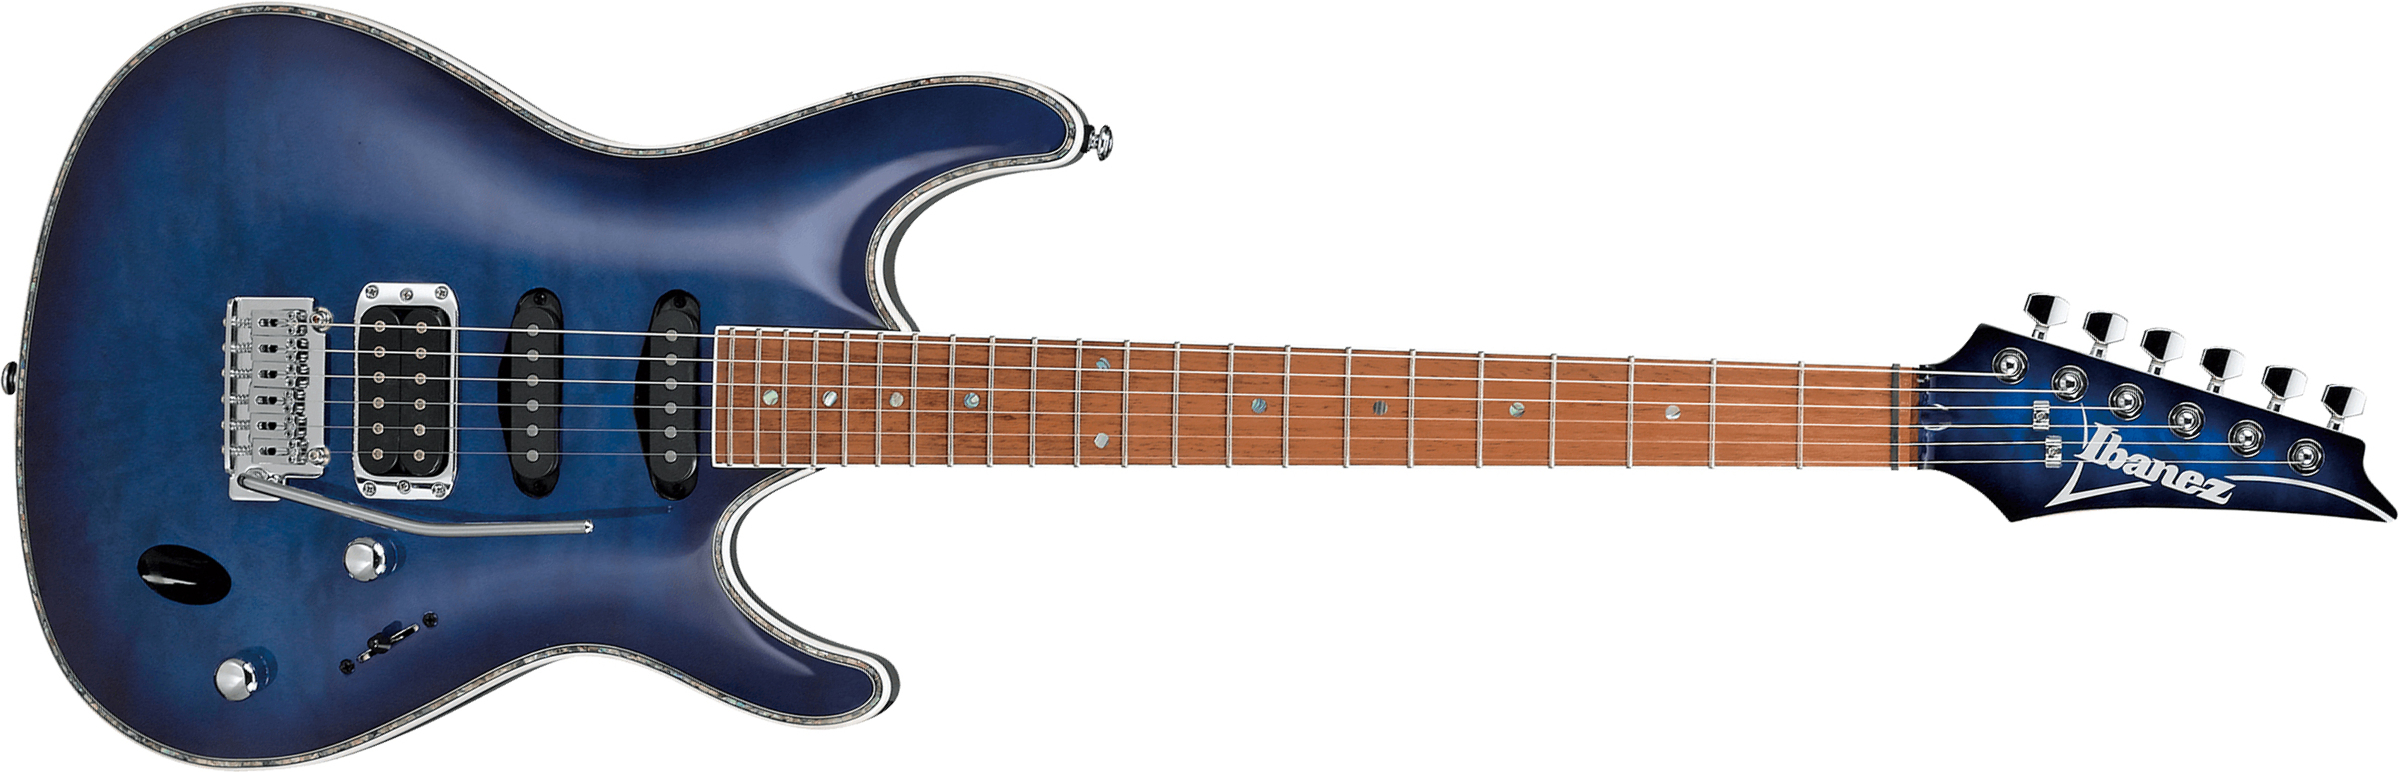 Ibanez Sa360nqm Spb Standard Hss Trem Jat - Sapphire Blue - Elektrische gitaar in Str-vorm - Main picture